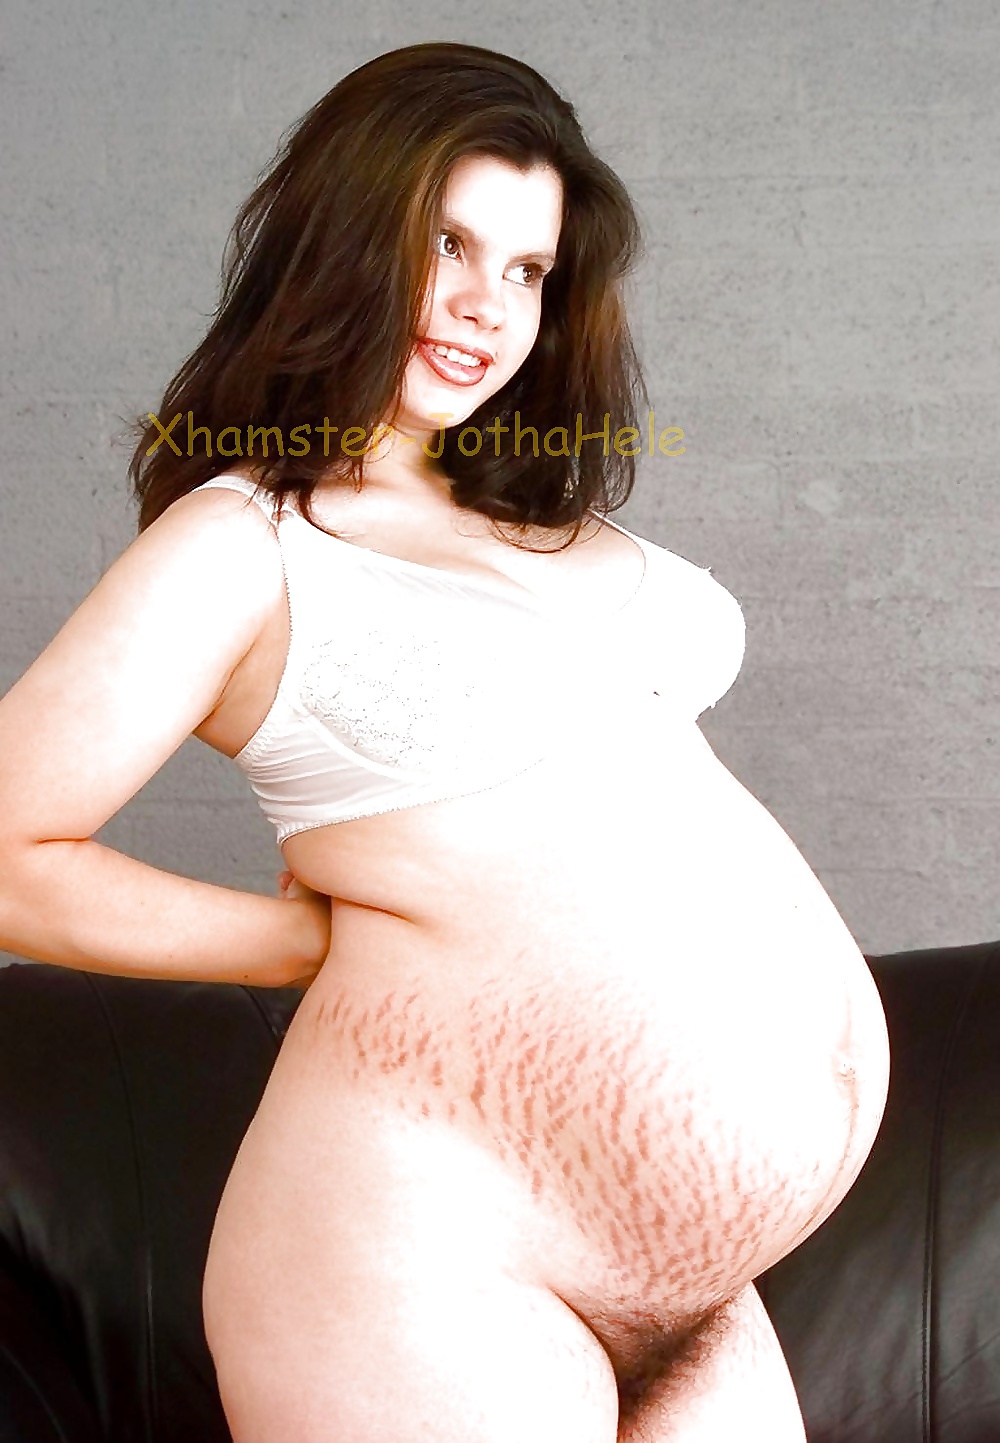 Hermosas chicas embarazadas peludas - jothahele
 #33033685